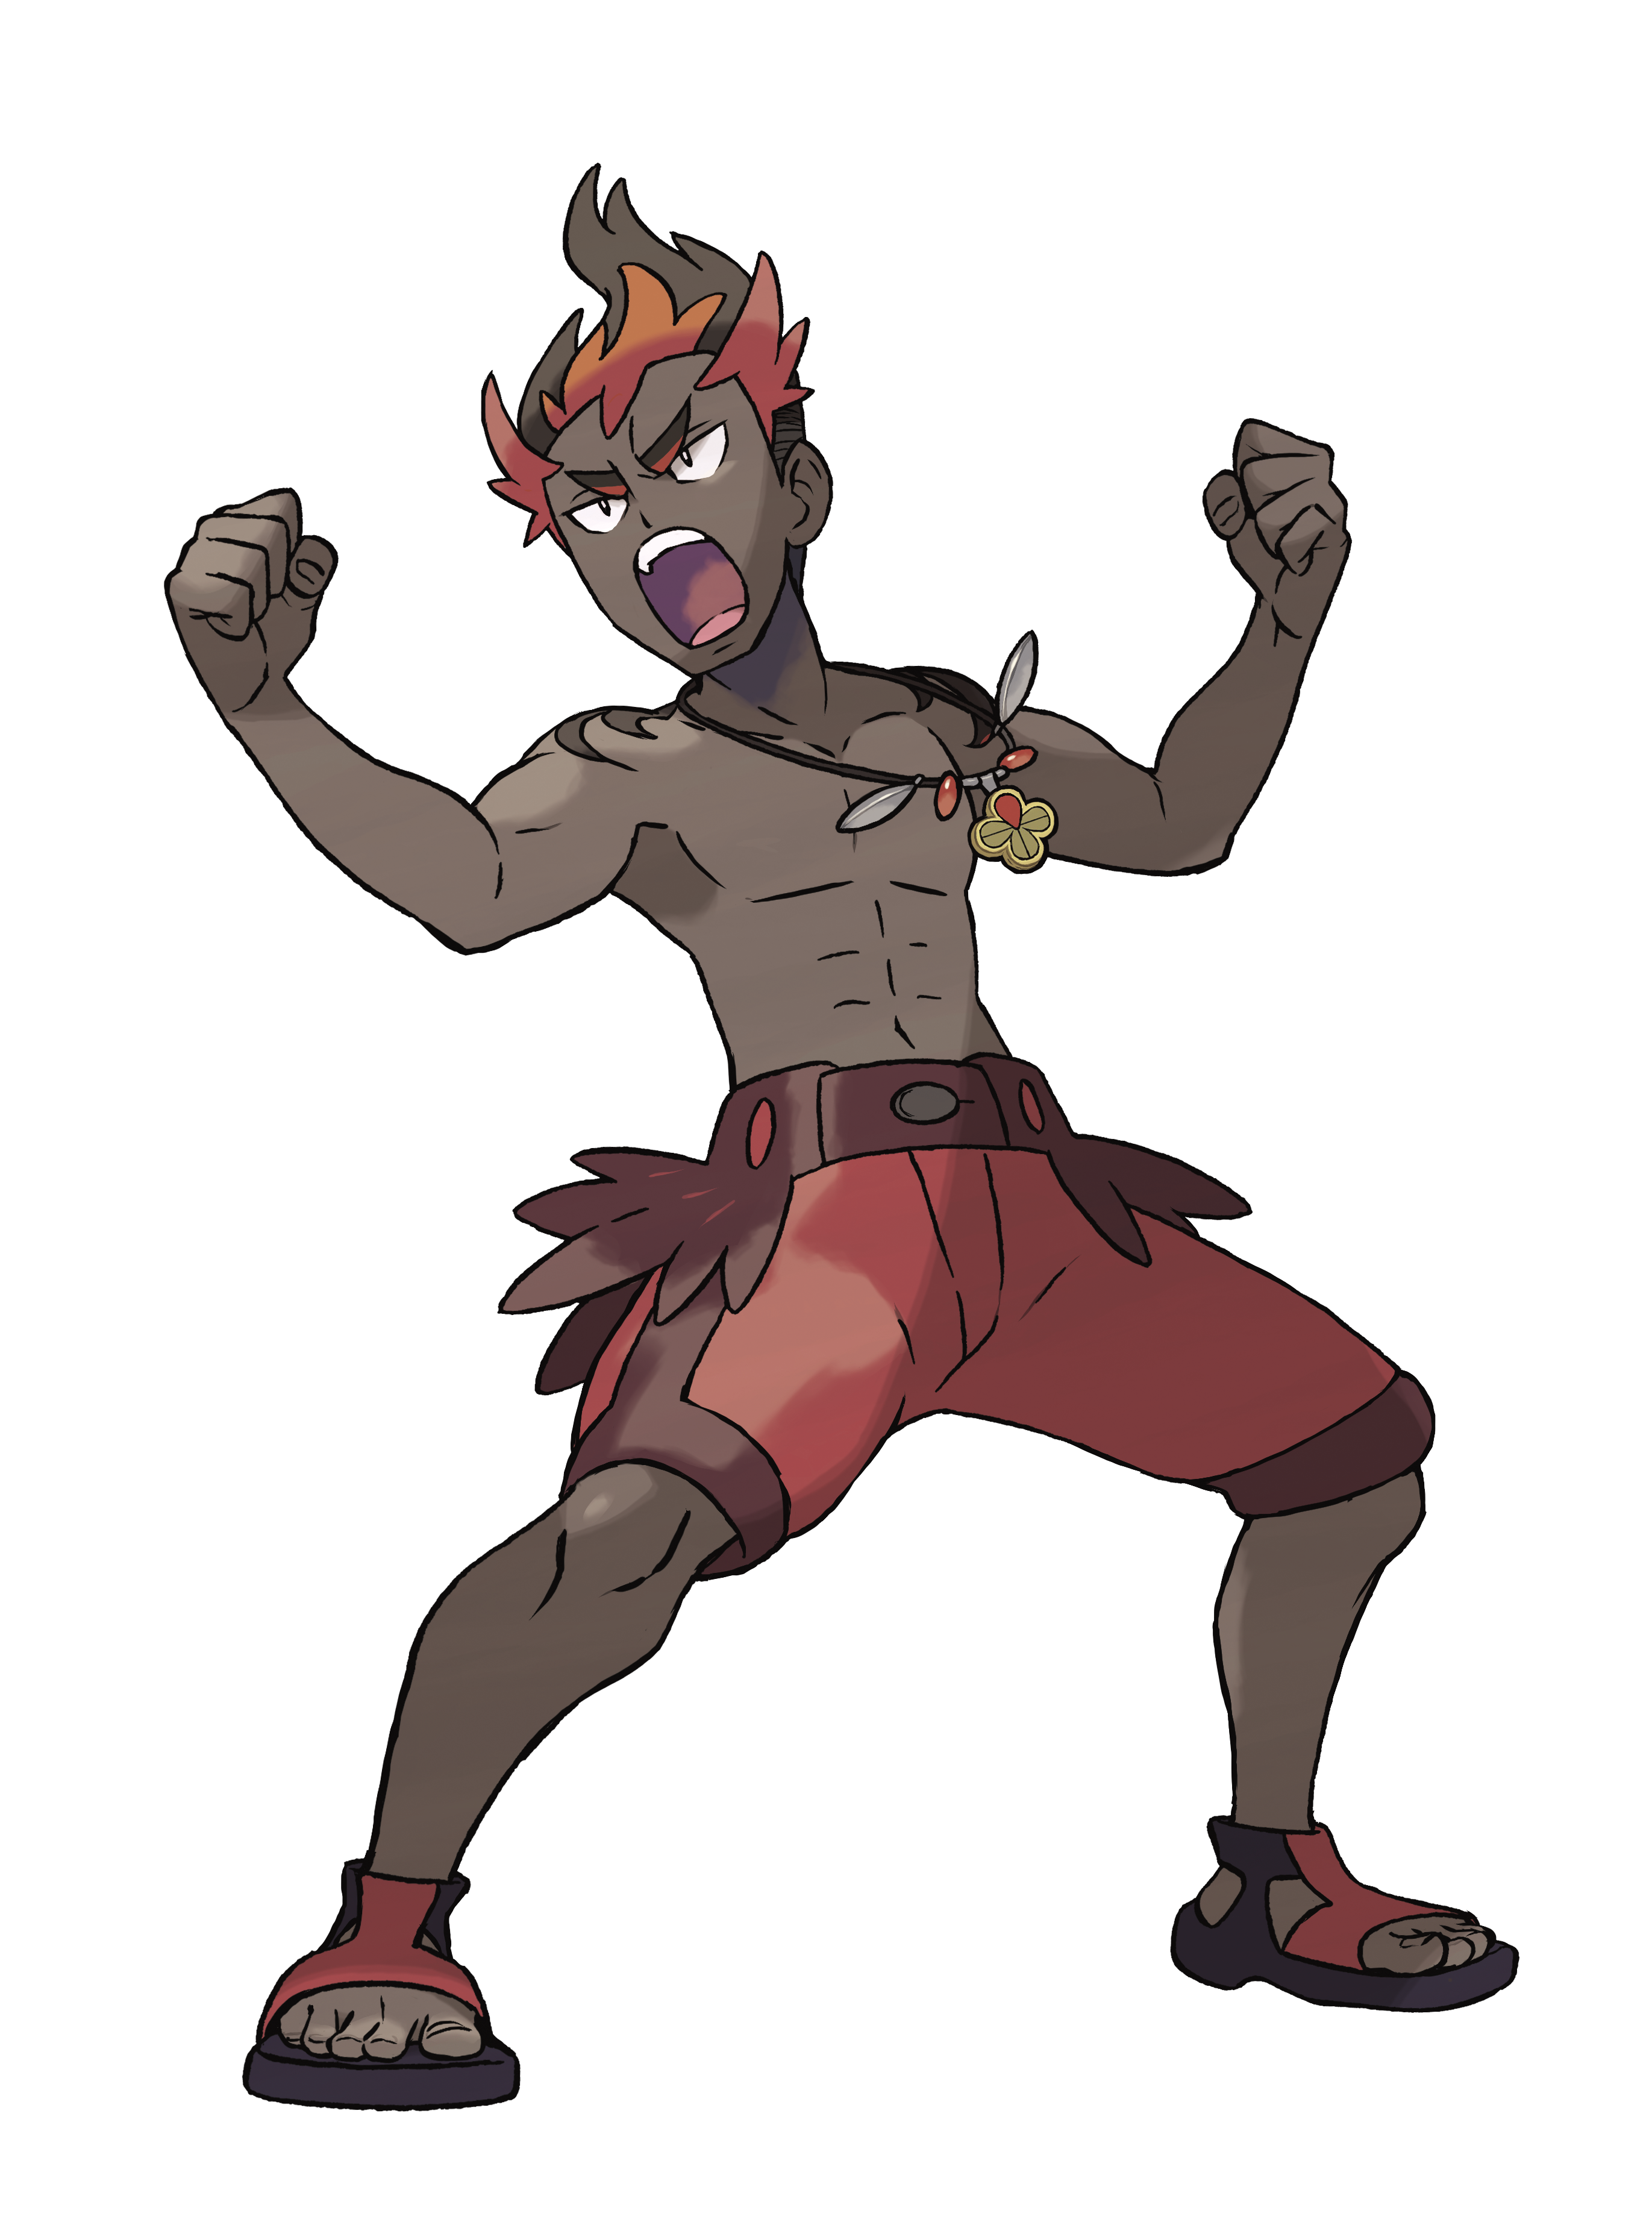 Personagens: Kiawe – Pokémon Mythology